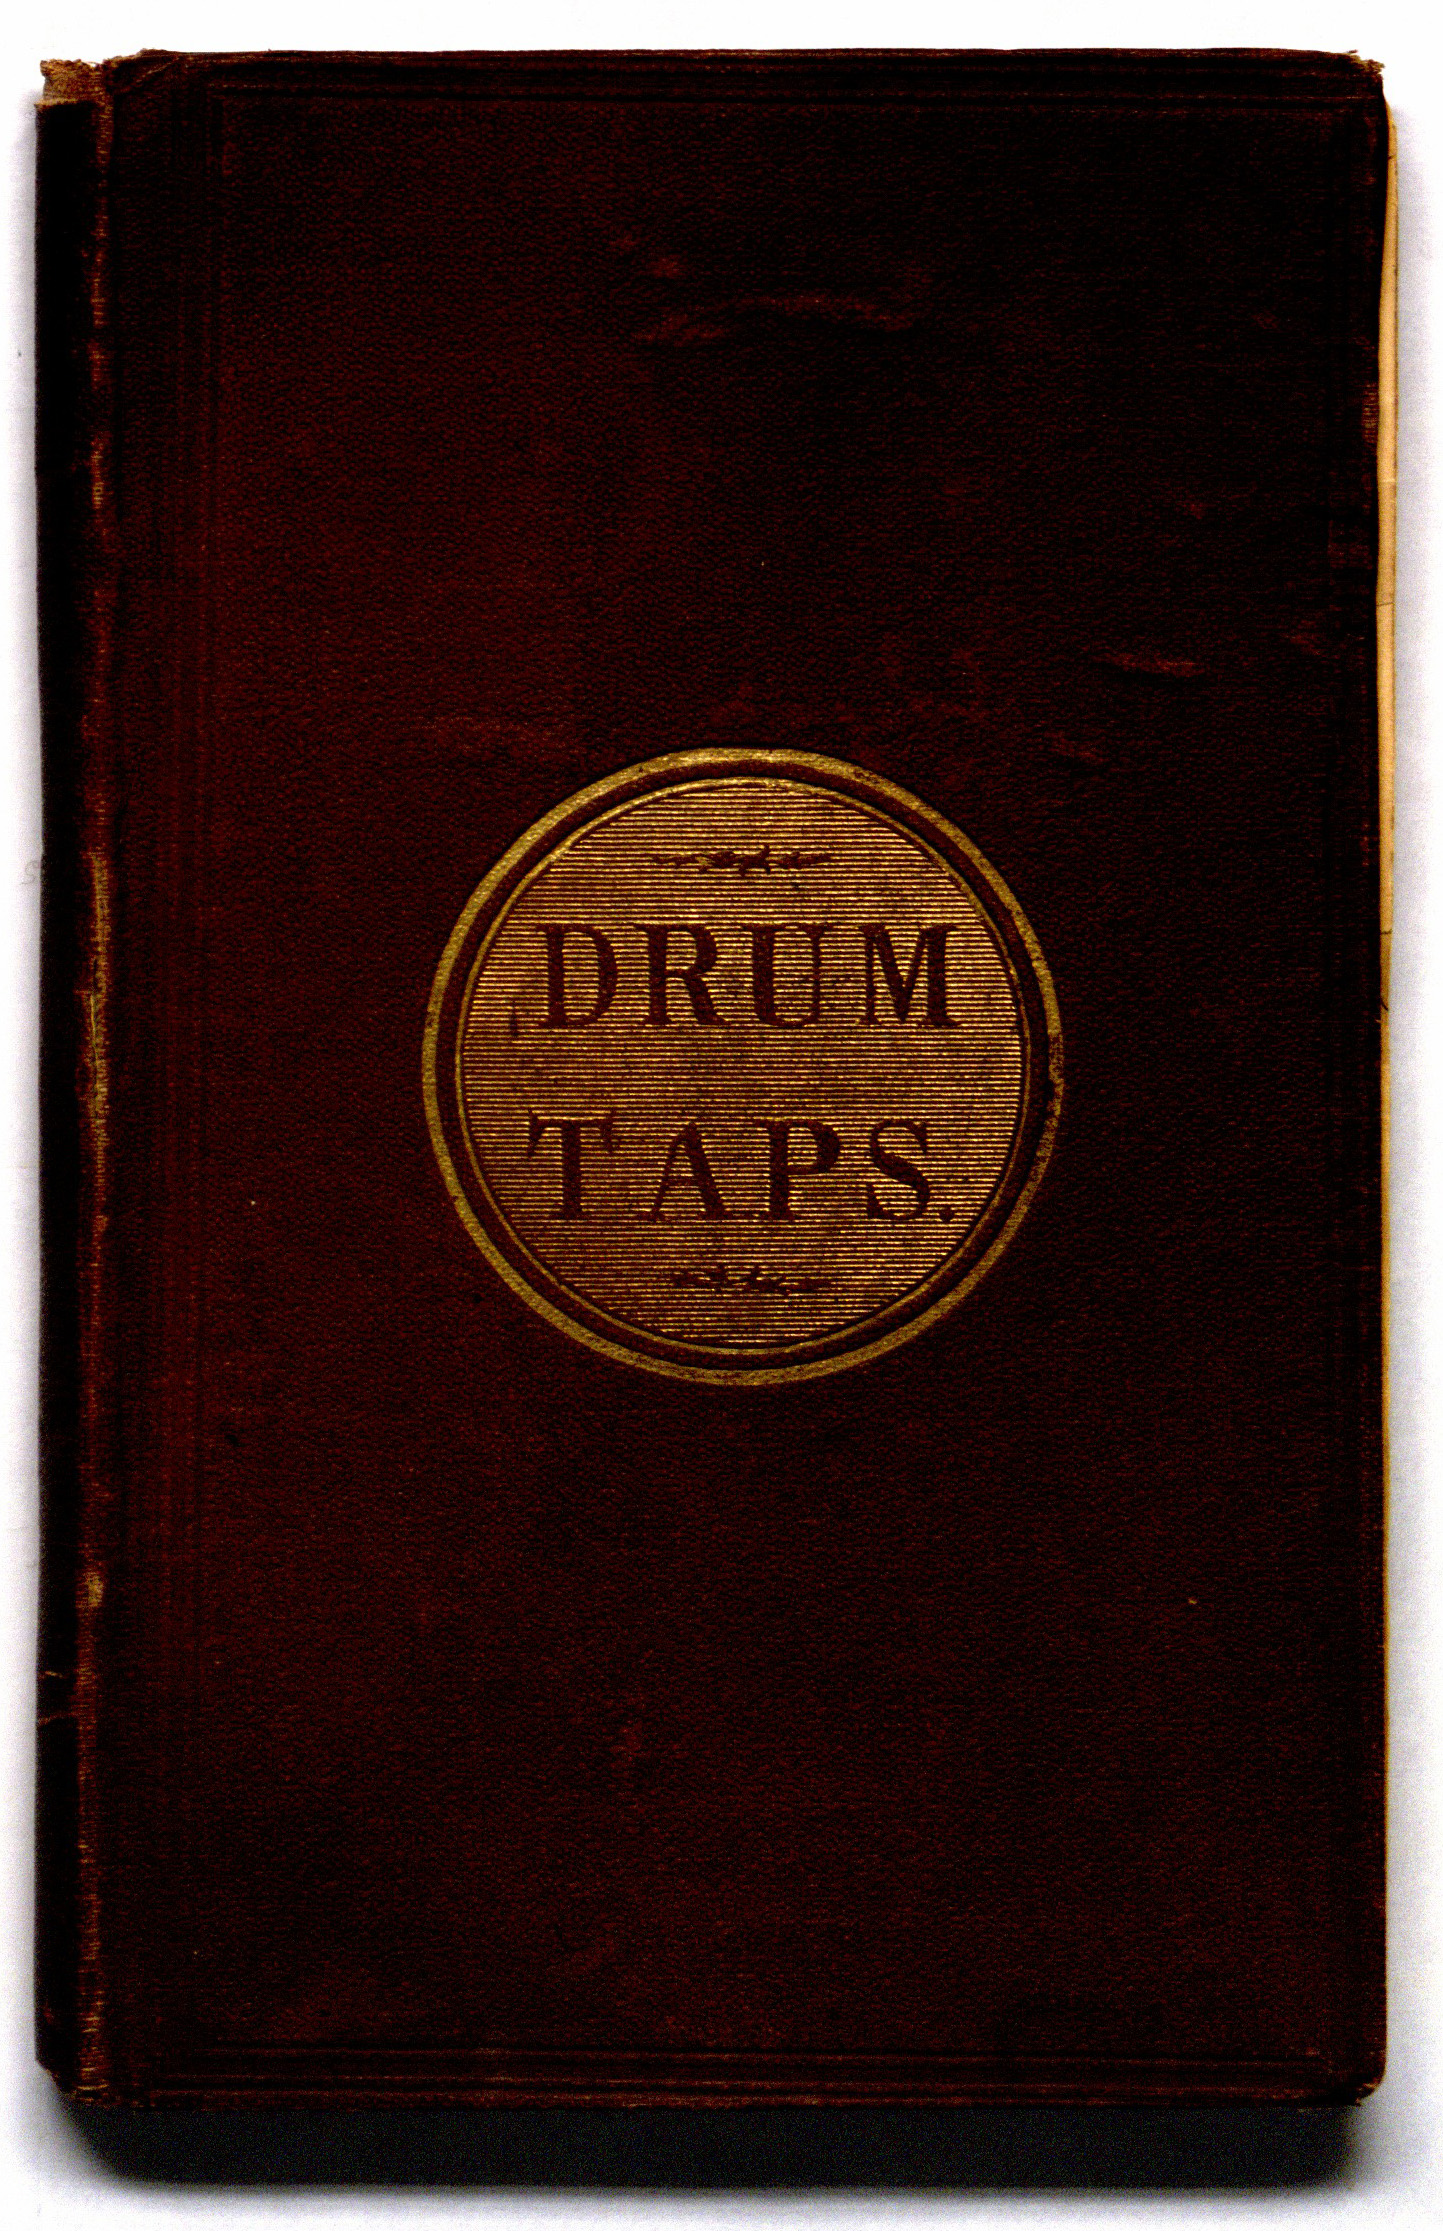 Drum-Taps Cover